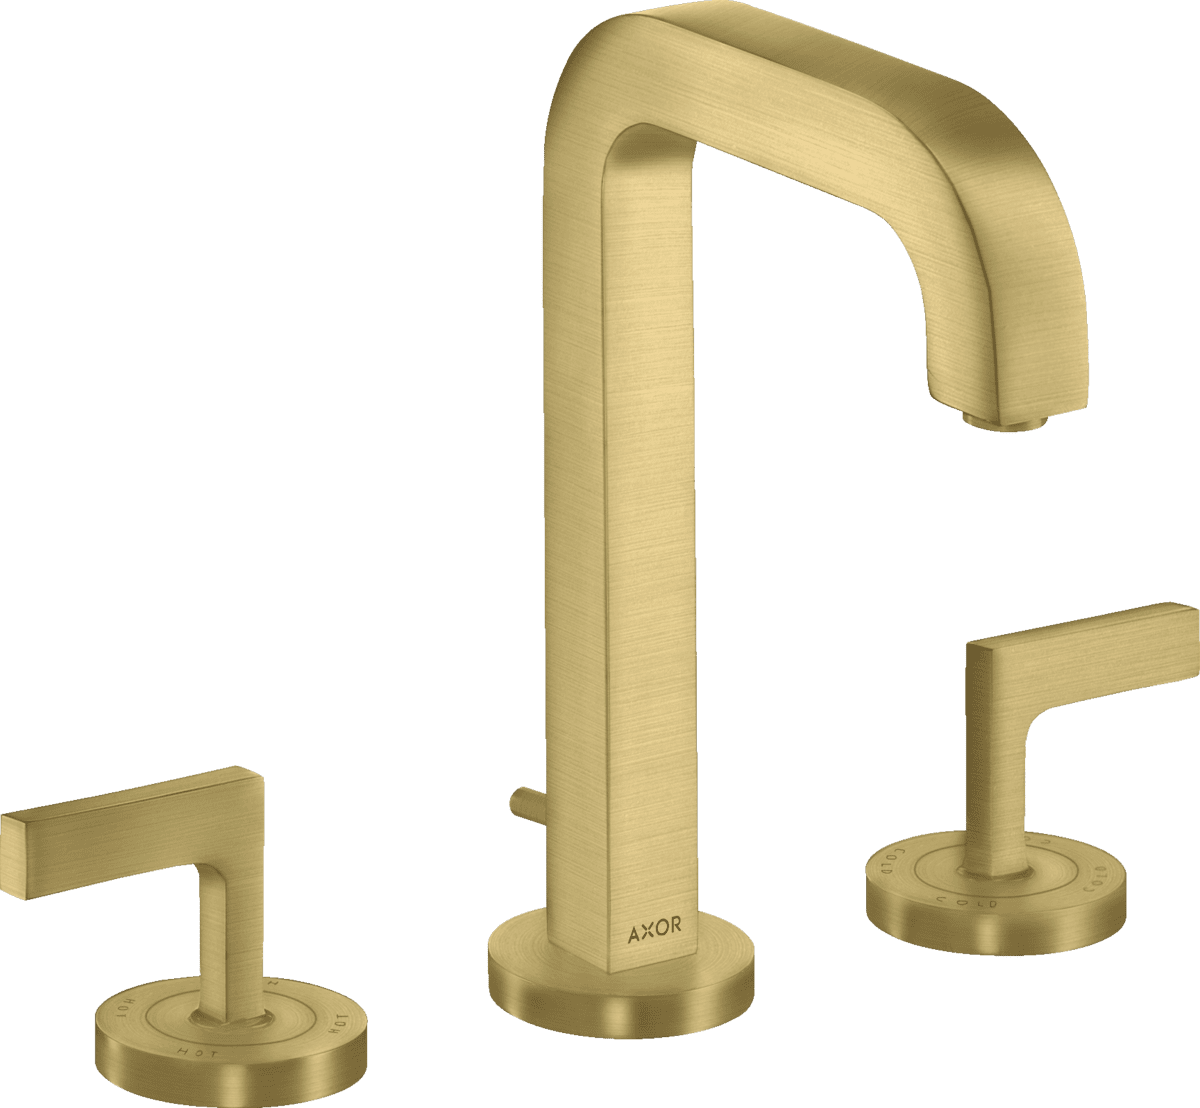 εικόνα του HANSGROHE AXOR Citterio 3-hole basin mixer 170 with spout 140 mm, lever handles, escutcheons and pop-up waste set #39135950 - Brushed Brass